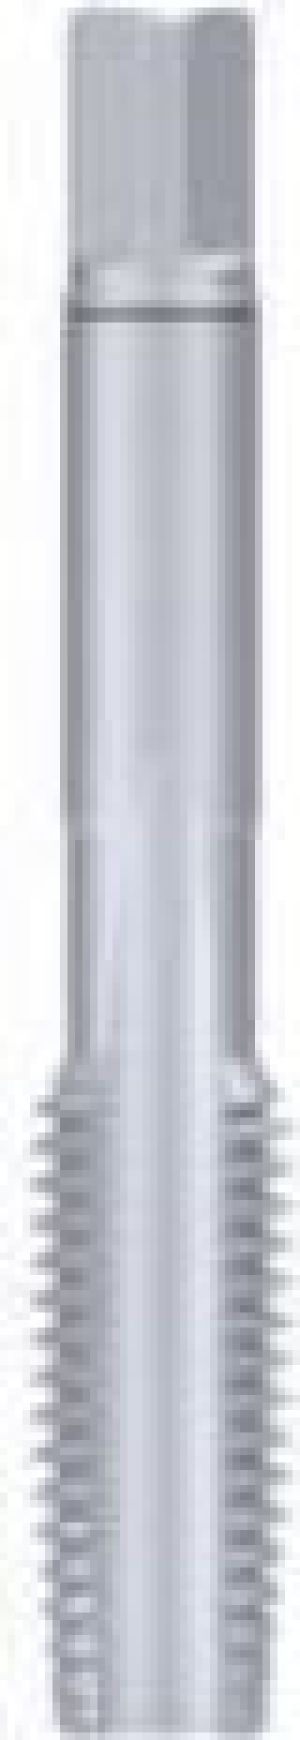 Fanar Gwintownik ręczny M12x1 (A1-121001-0123) 1